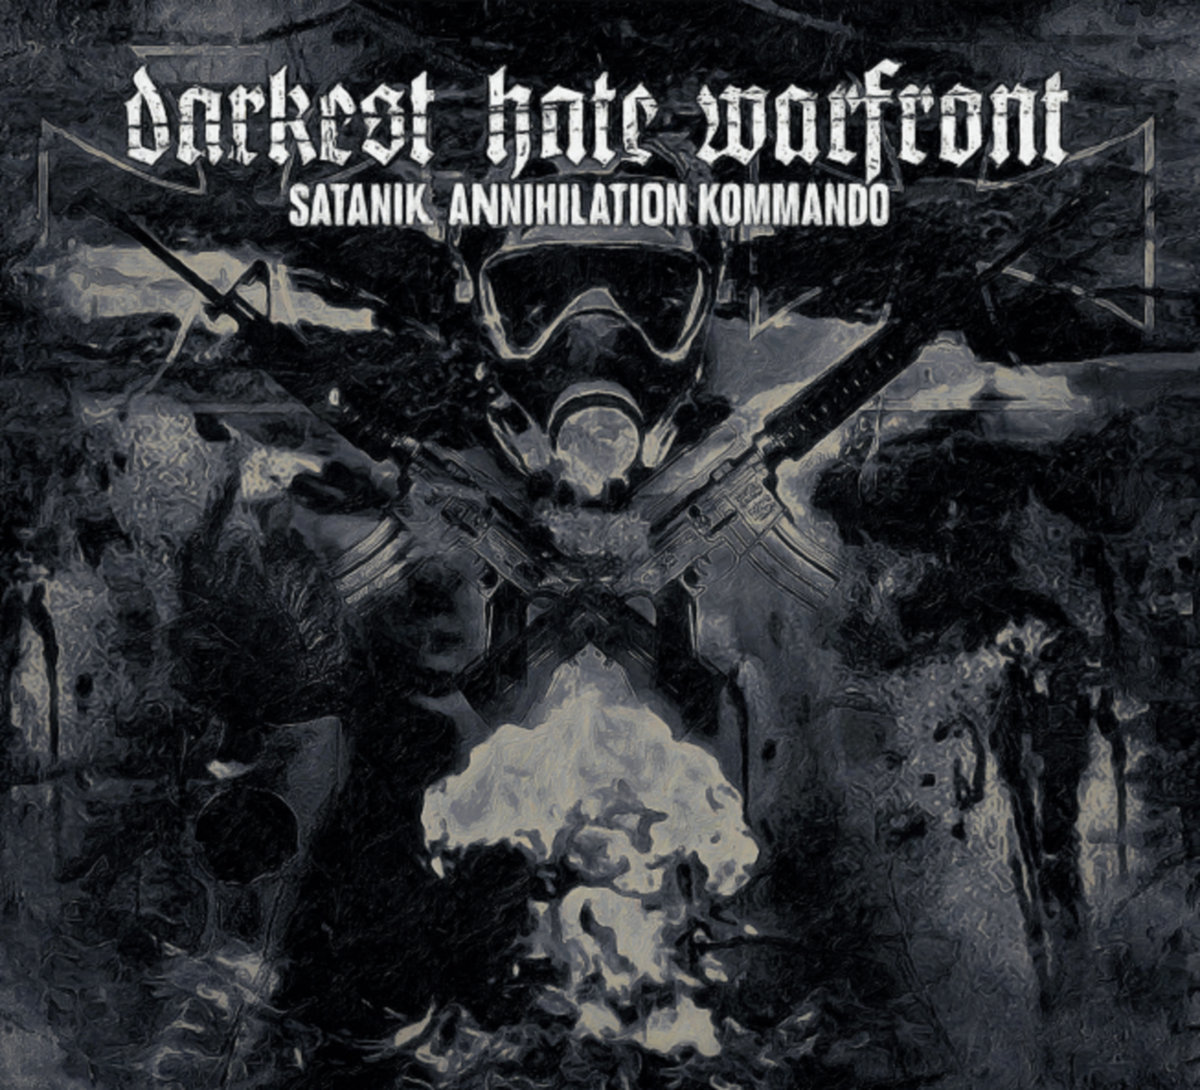 Darkest Hate Warfront - Satanik Annihilation Kommando 